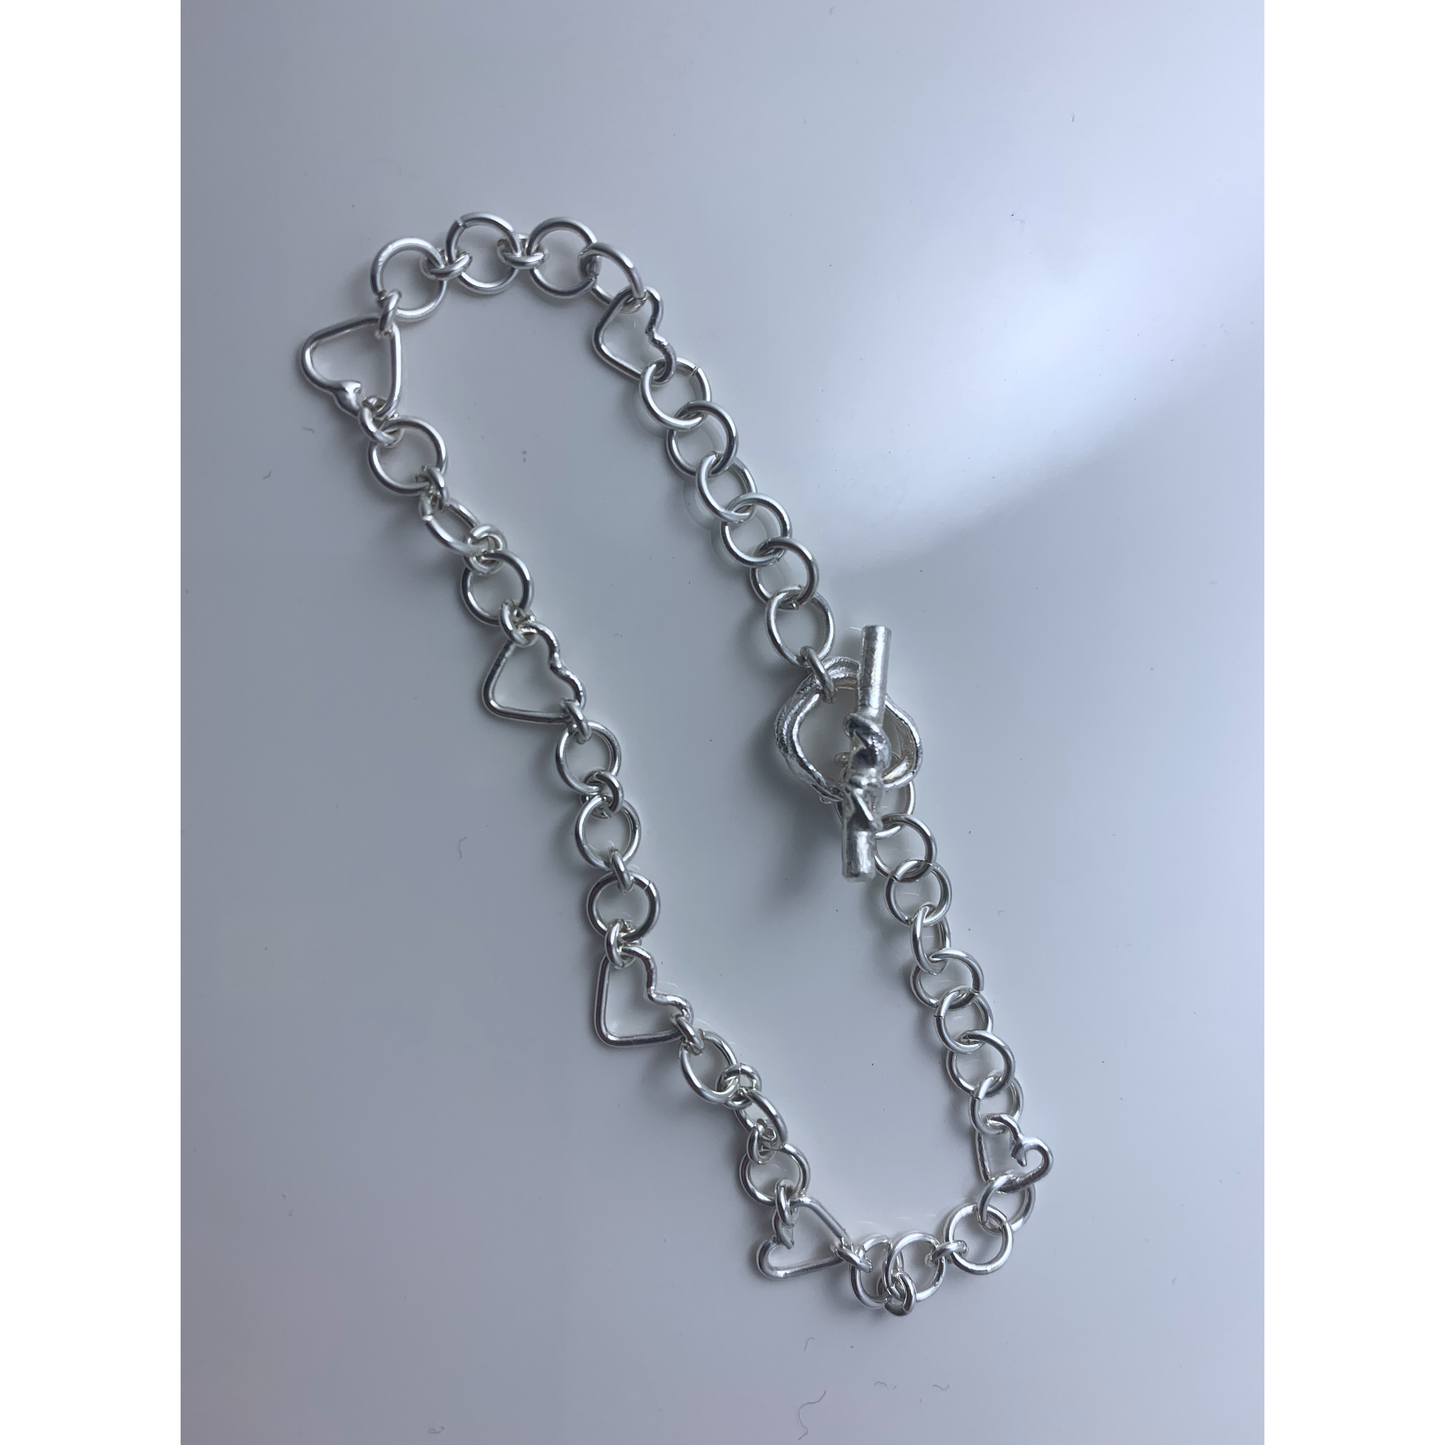 Handmade heart link bracelet